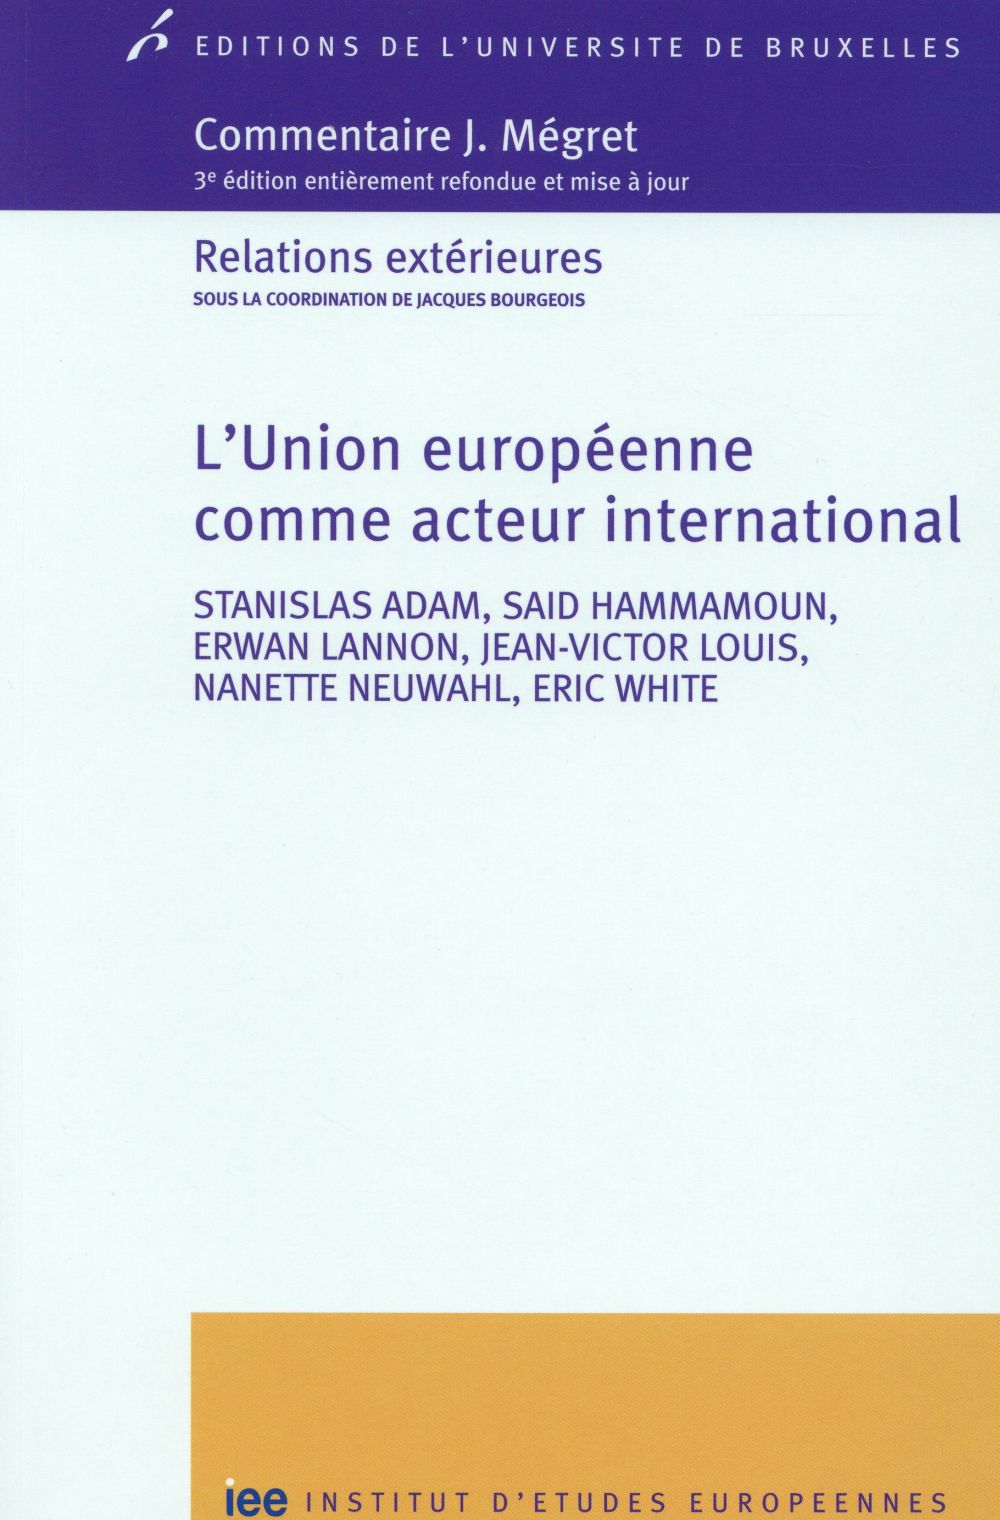 L'UNION EUROPEENNE COMME ACTEUR INTERNATIONAL